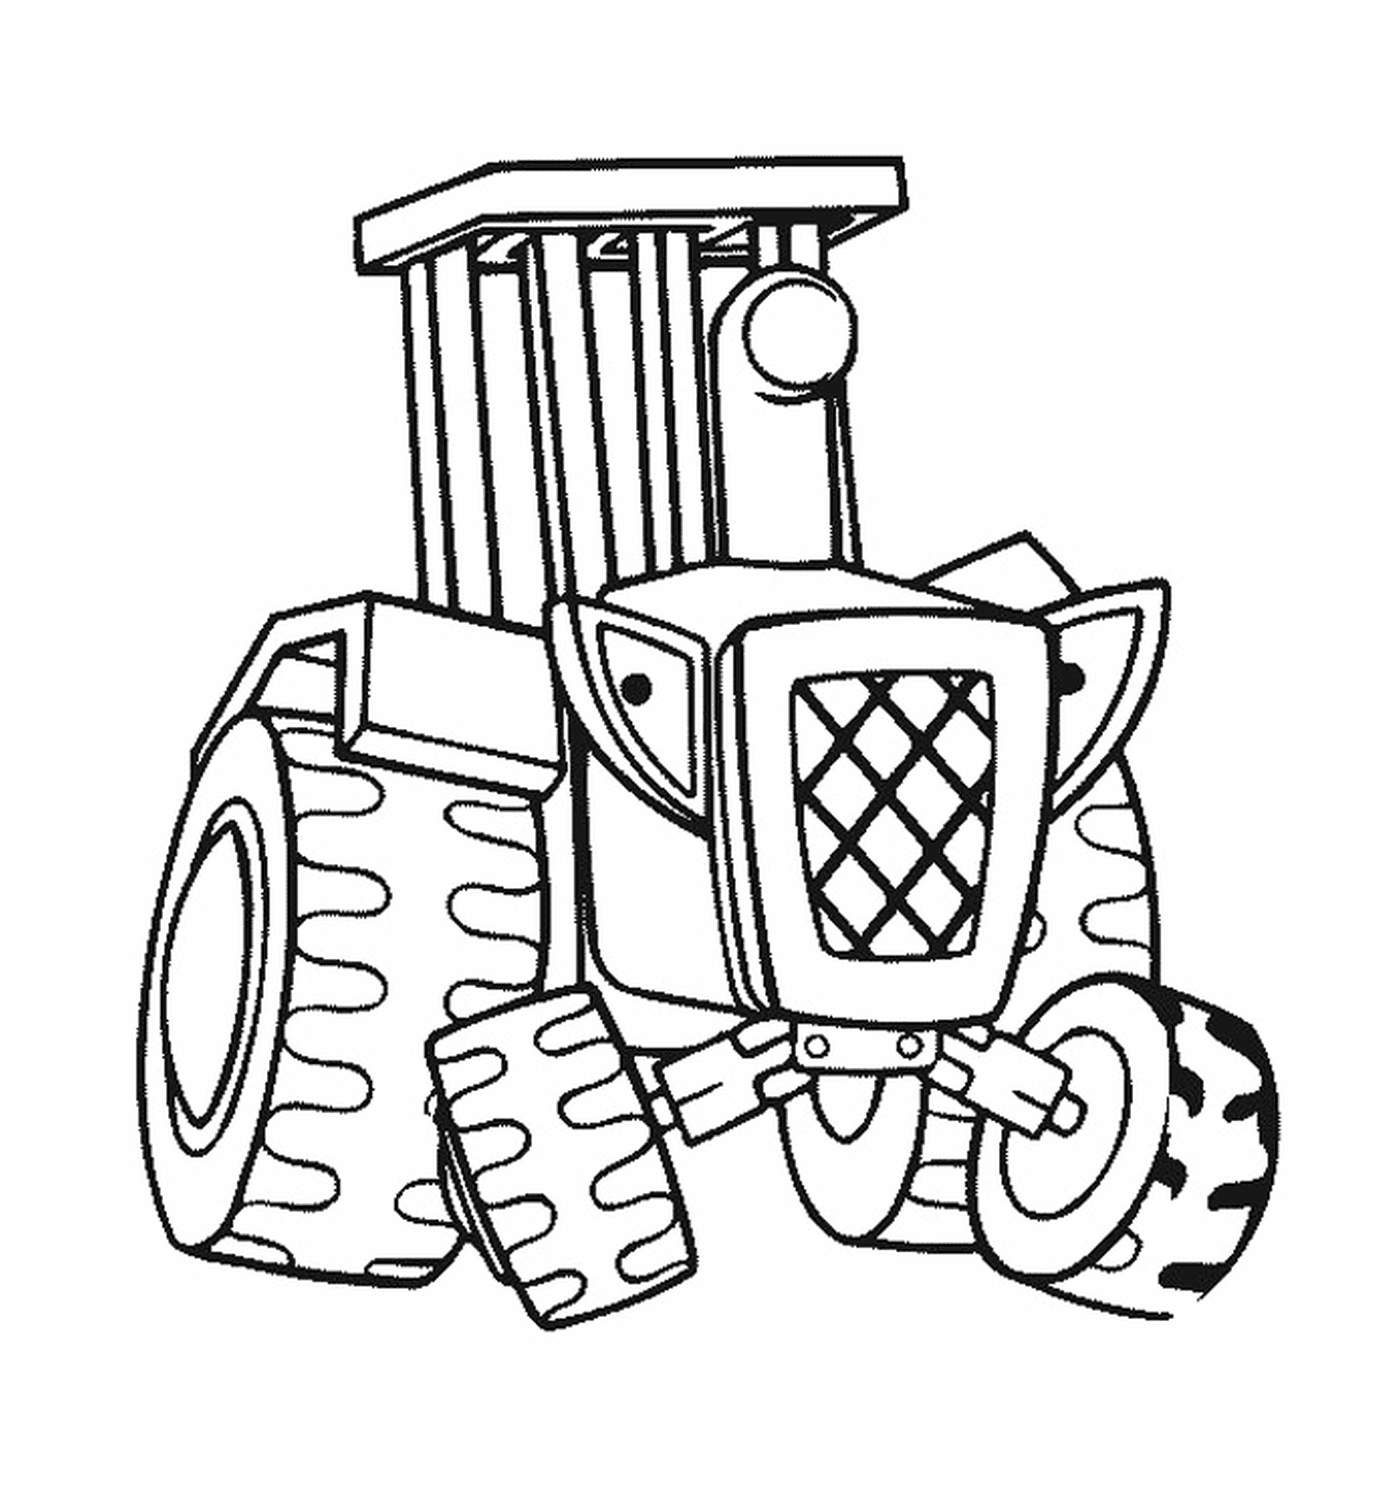  Un trattore raffigurato in un disegno 